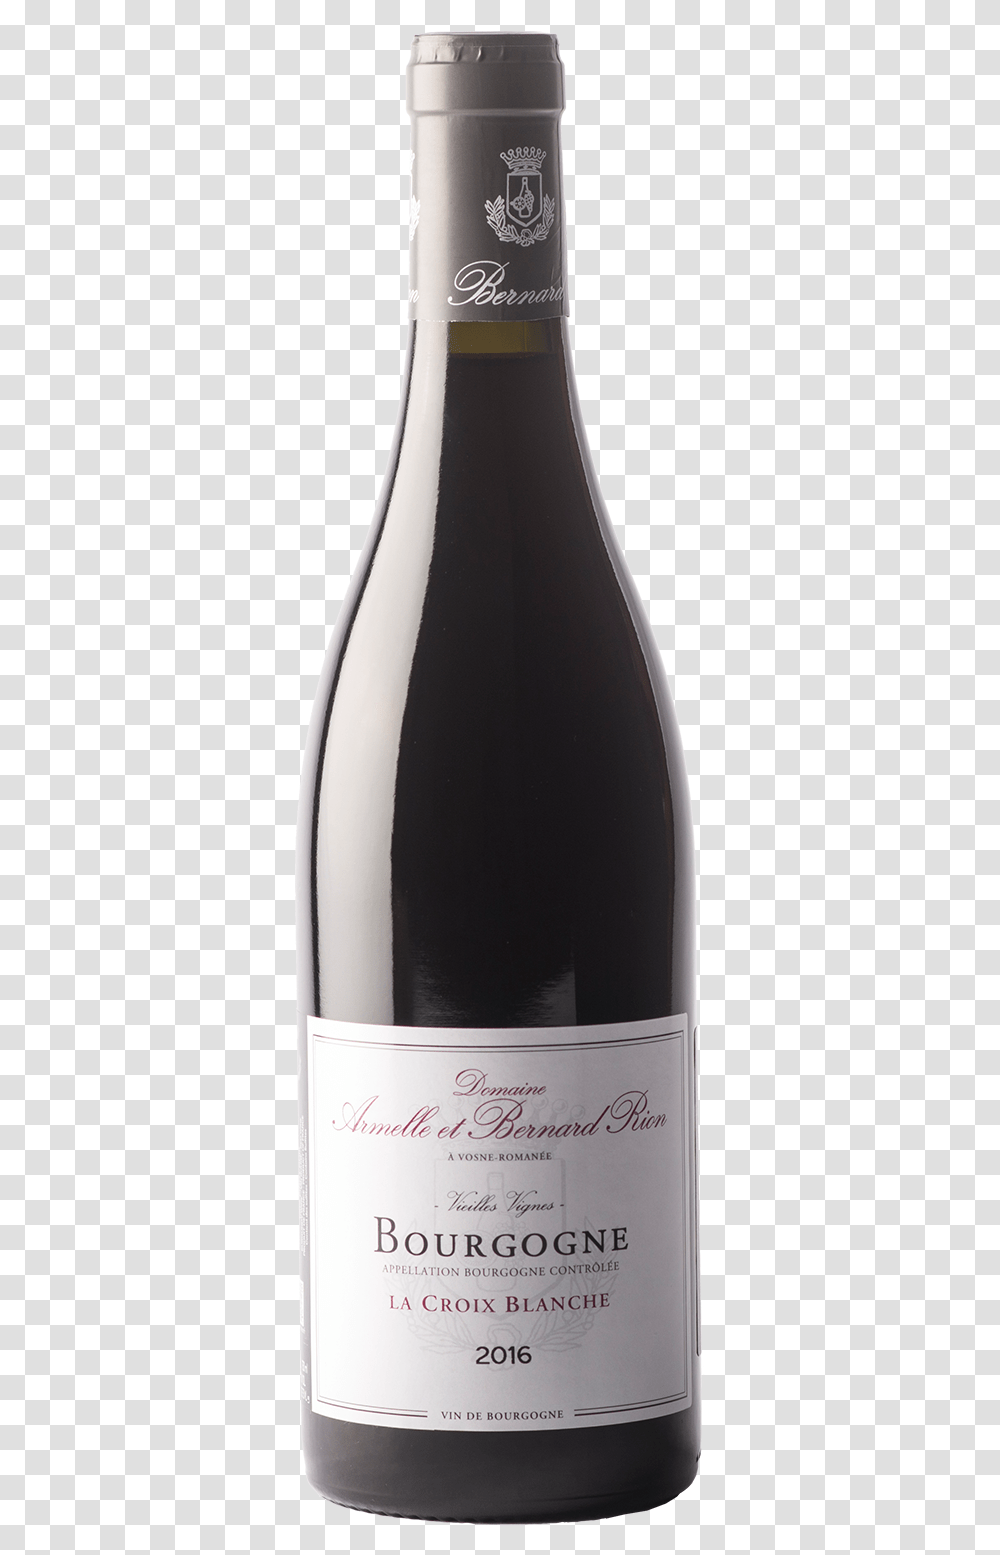 Armelle Et Bernard Rion Bourgogne La Croix Blanche Domaine De La Romanee Conti Richebourg 2015, Alcohol, Beverage, Drink, Wine Transparent Png